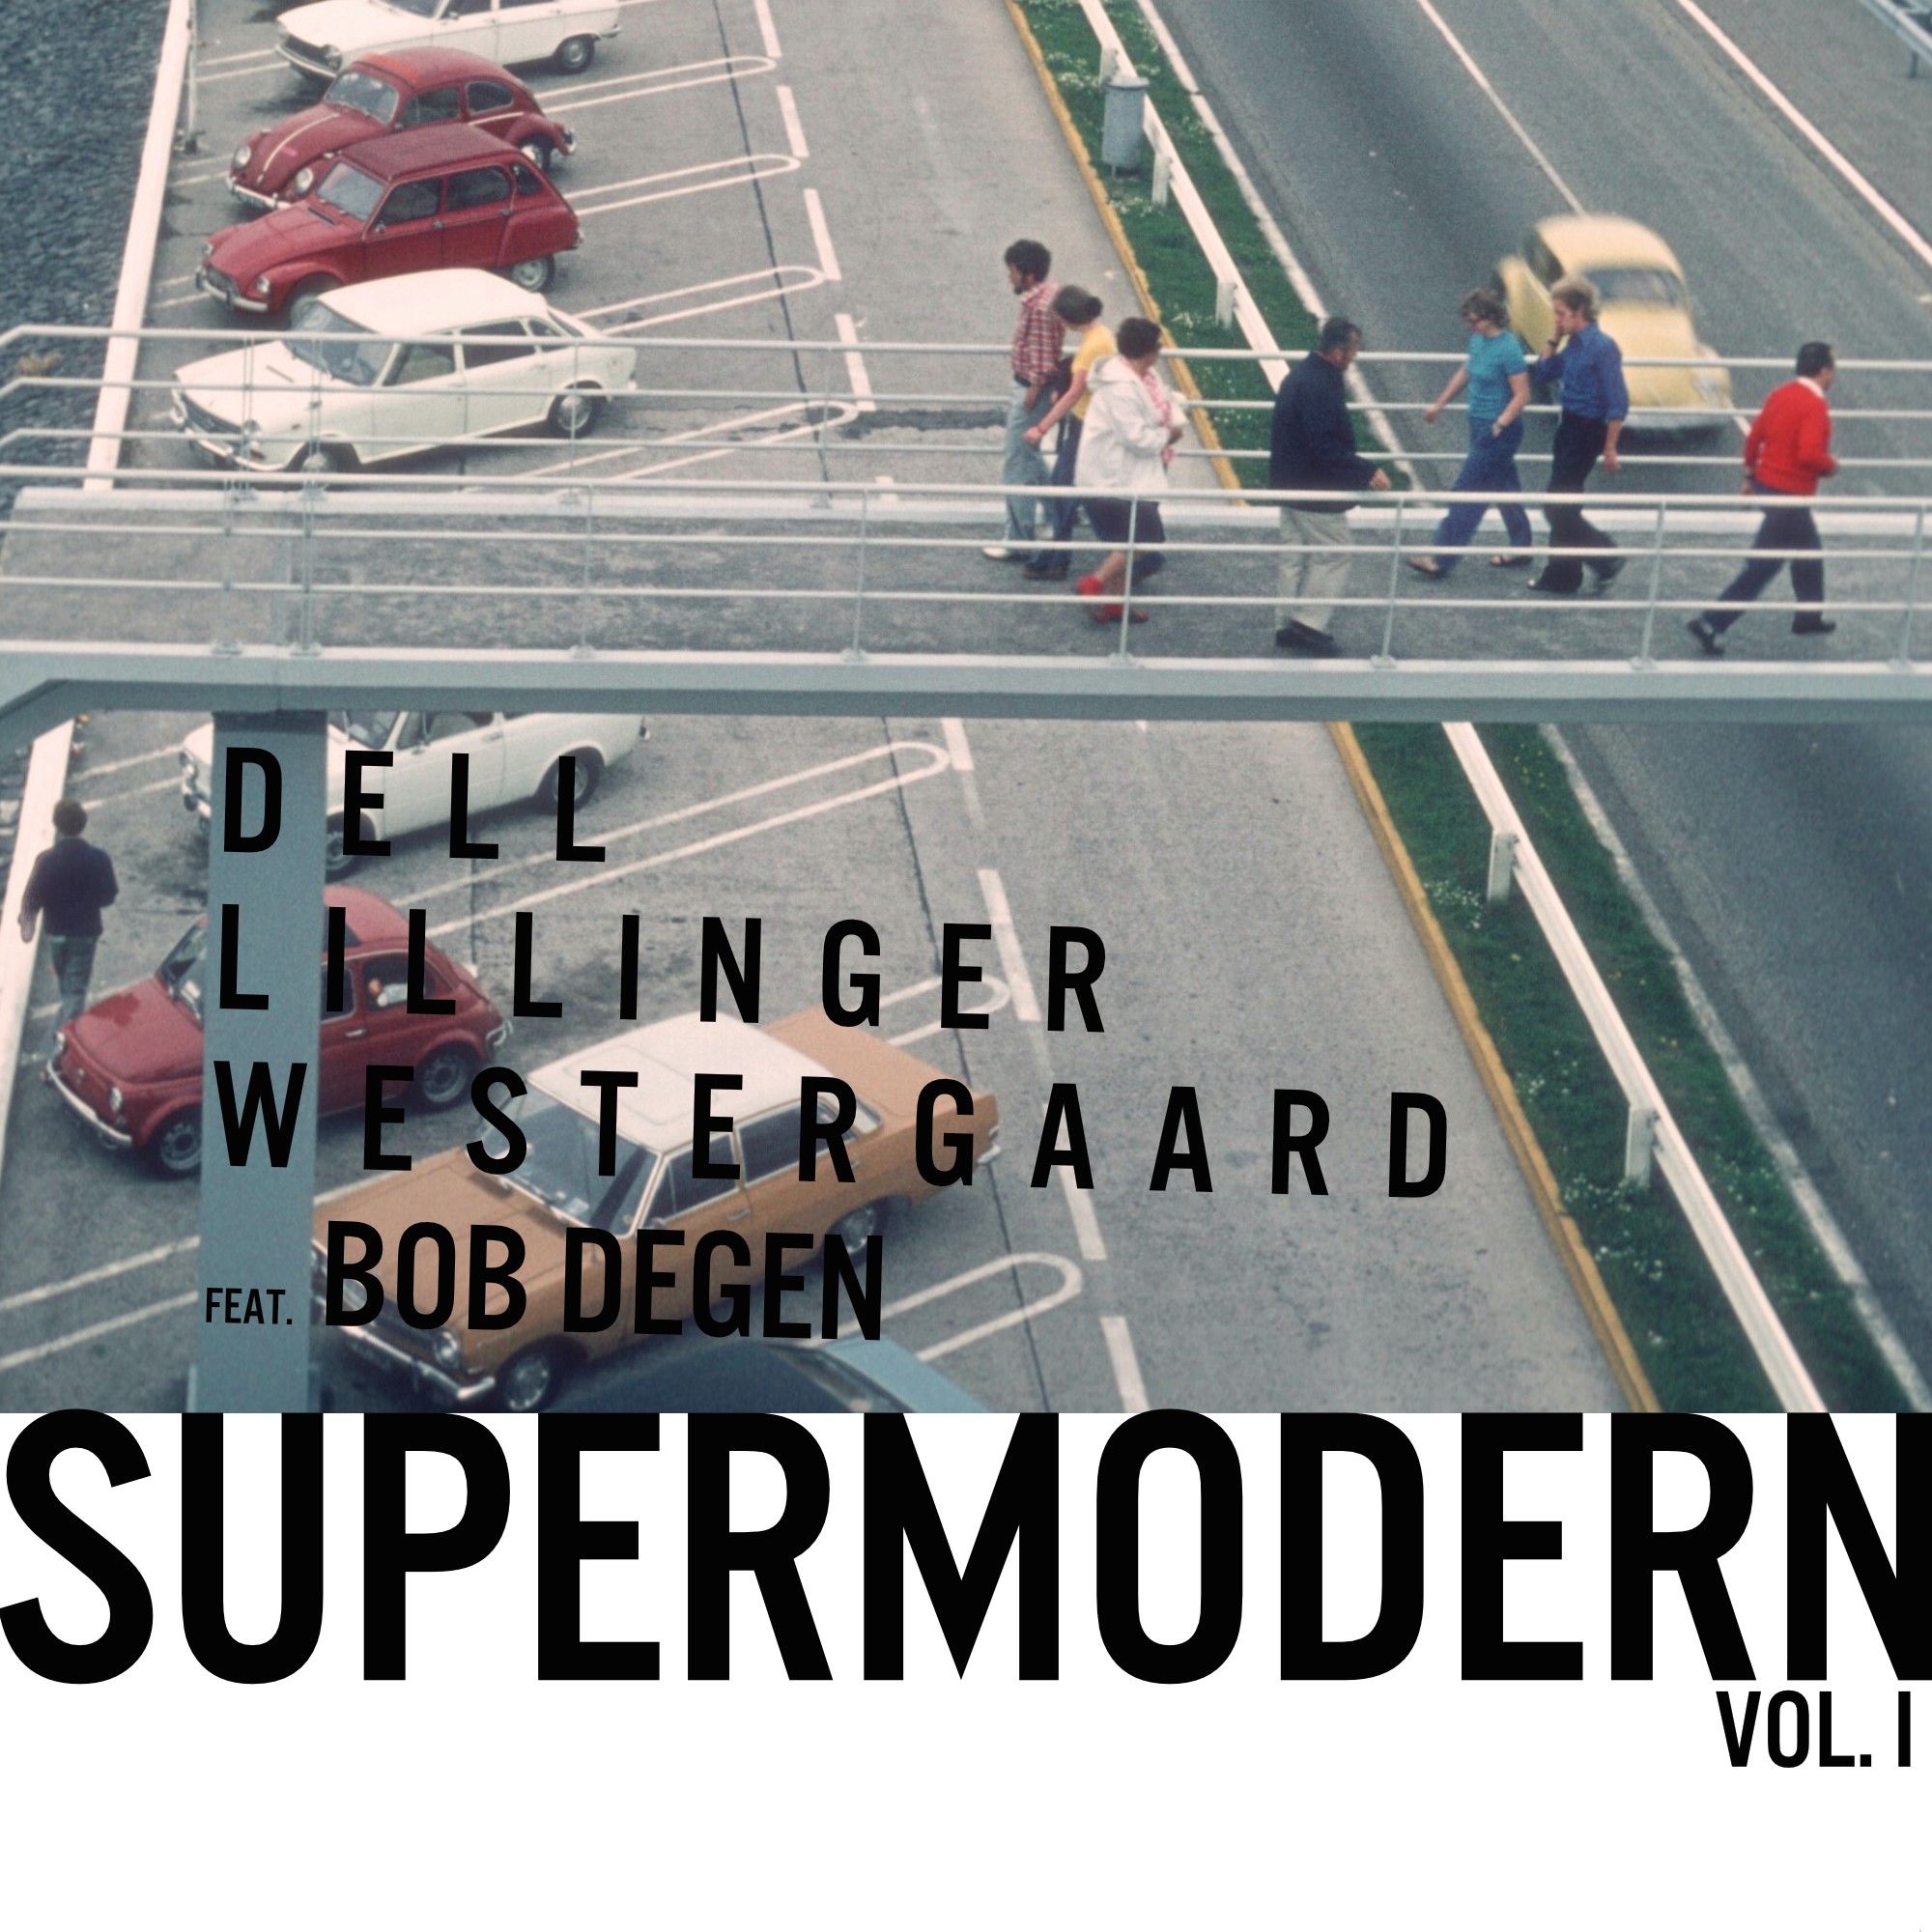 Supermodern Vol 1 / Dell / Lillinger / Westergaard feat. Bob Degen